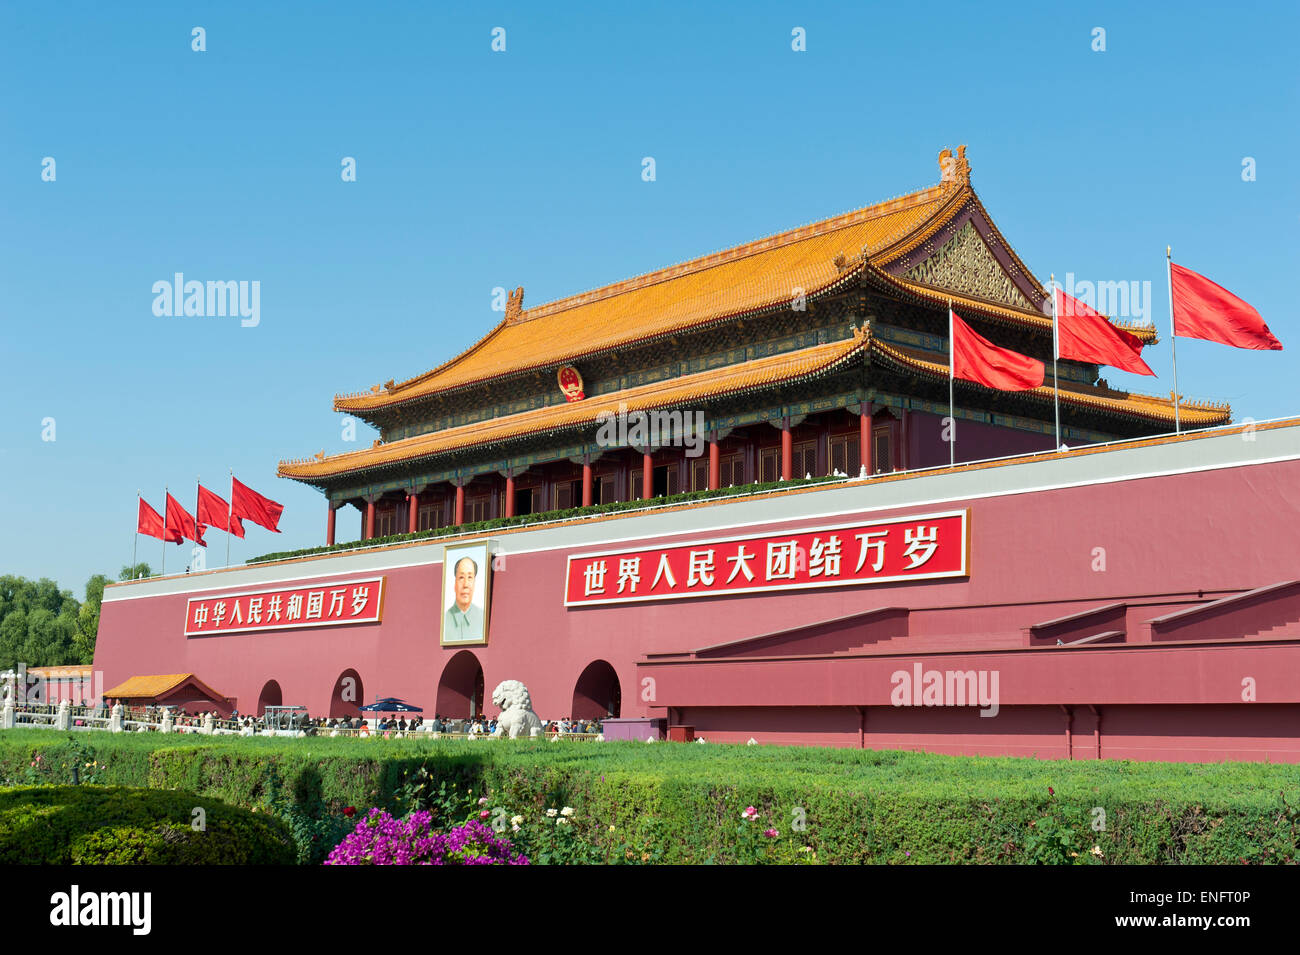 Portrait de Tiananmen Mao Zedong, porte de la paix céleste, la Place Tiananmen, Beijing, République populaire de Chine Banque D'Images